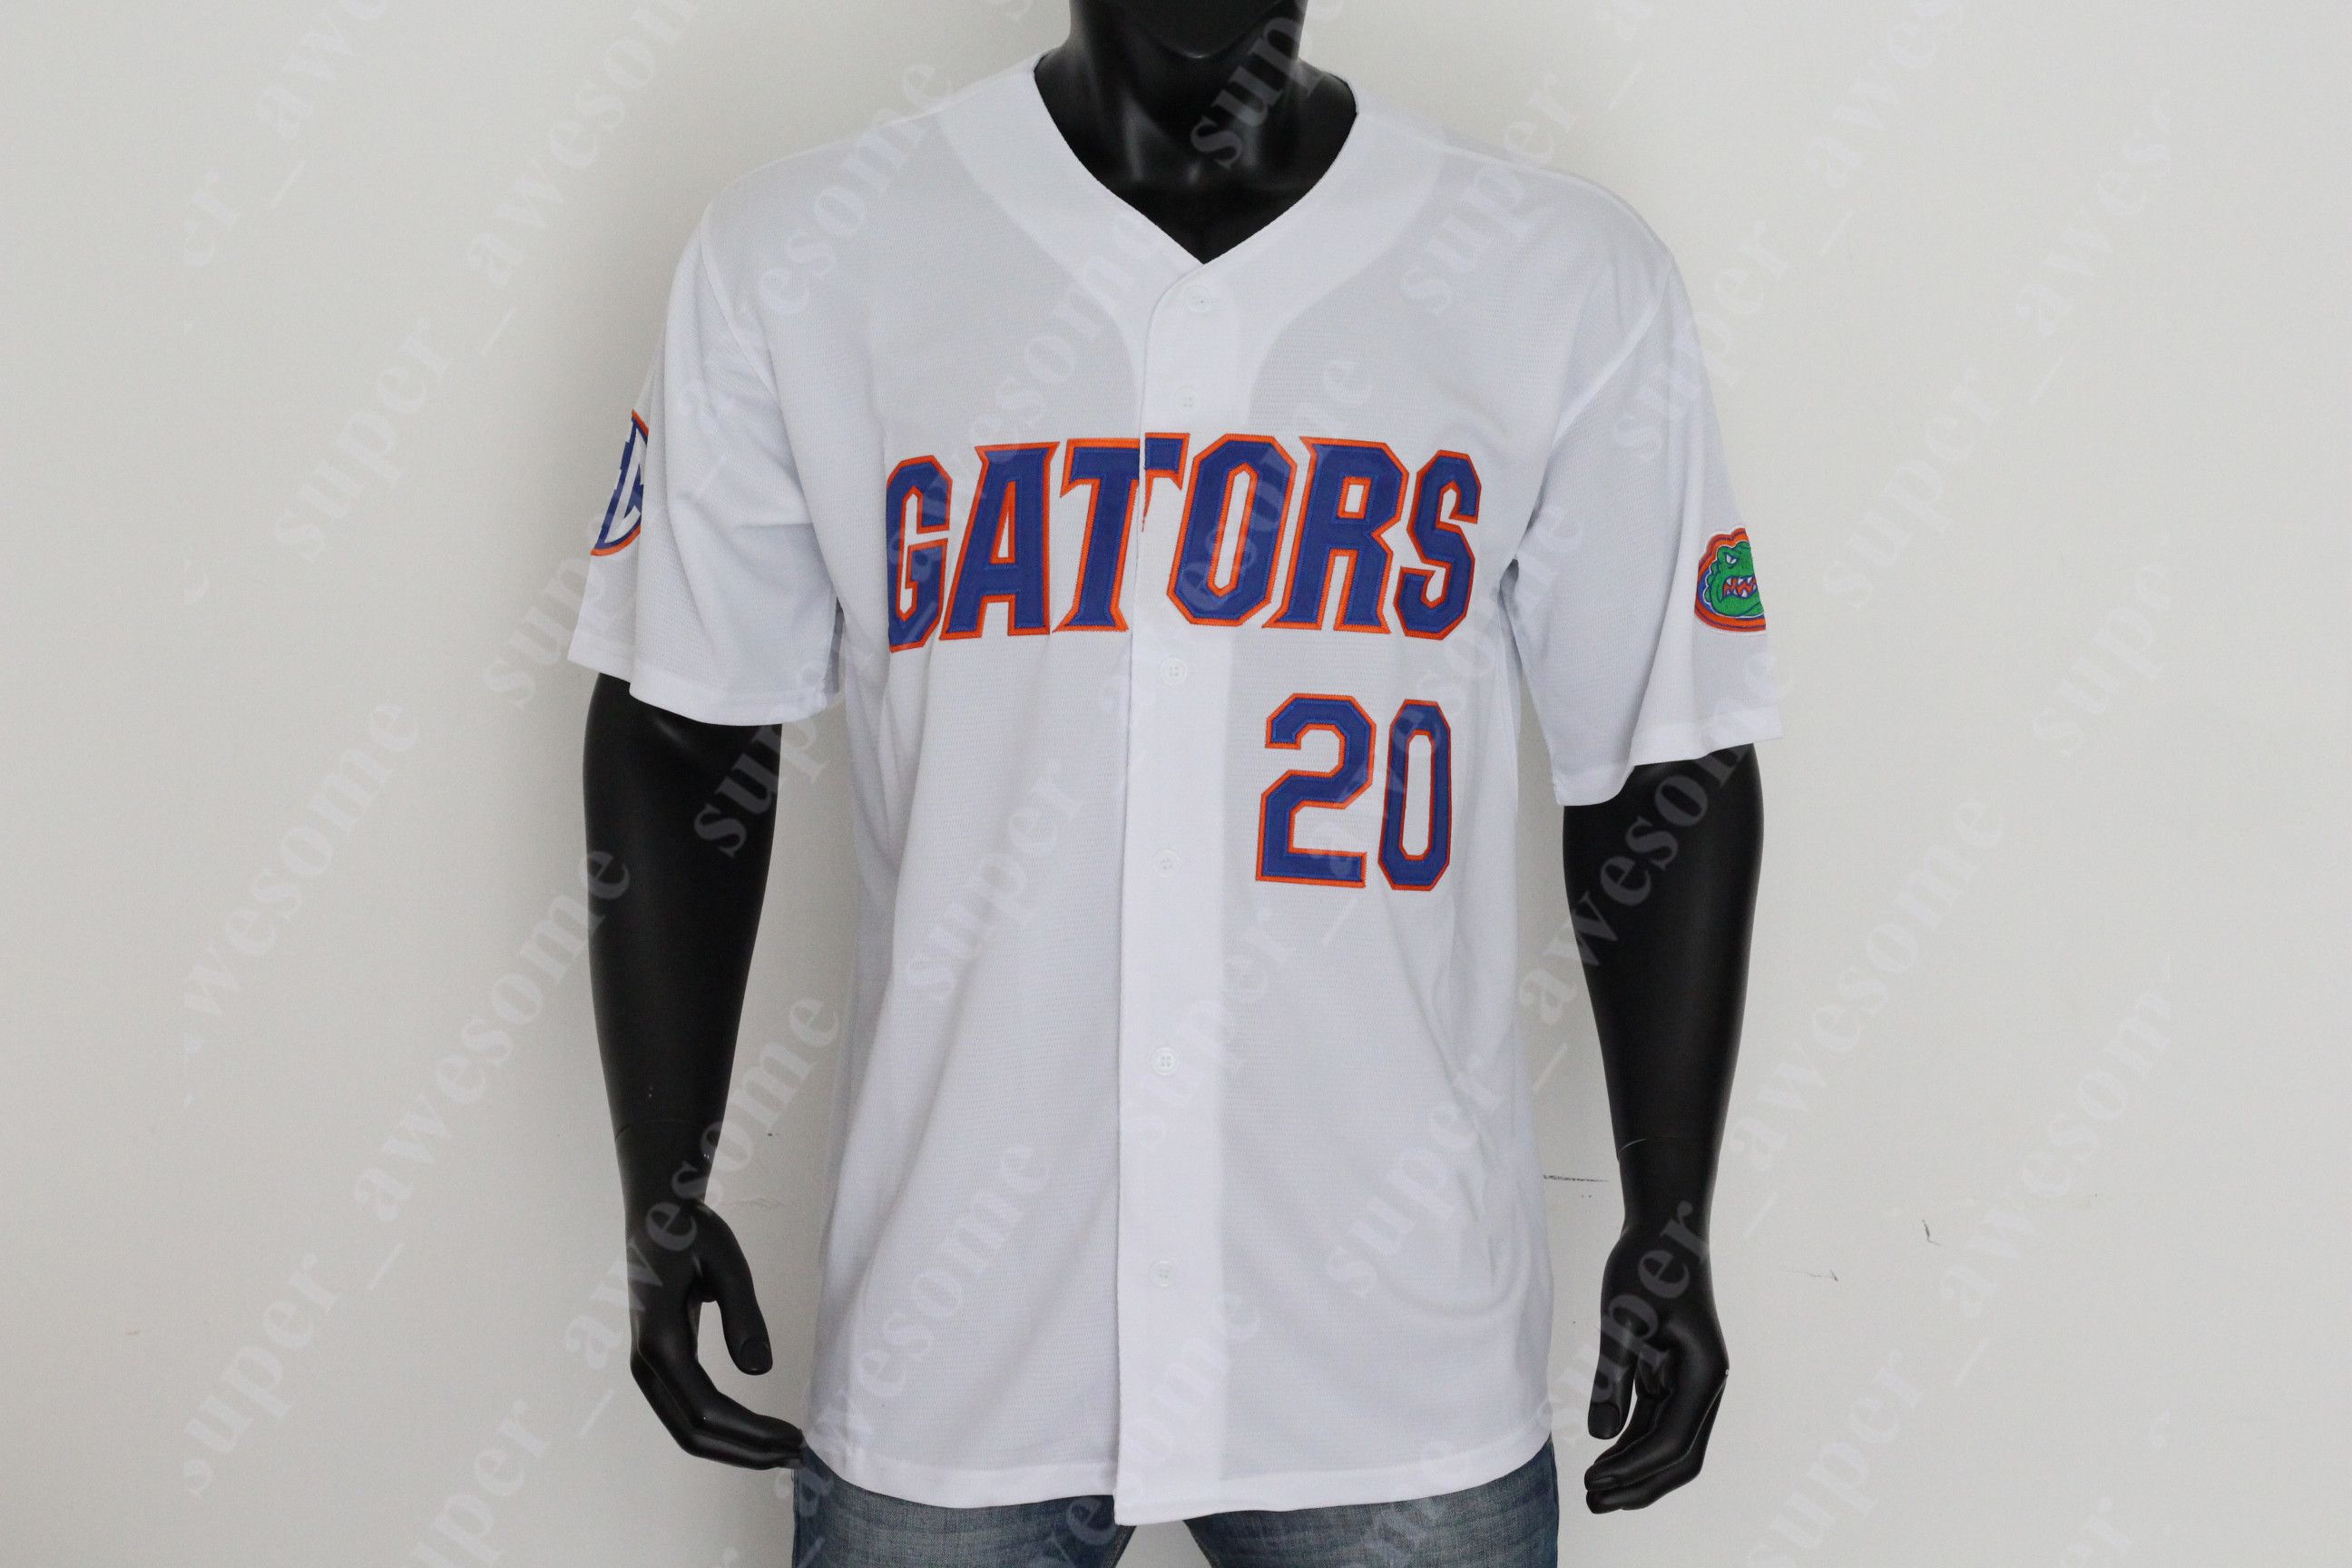 gators baseball jersey